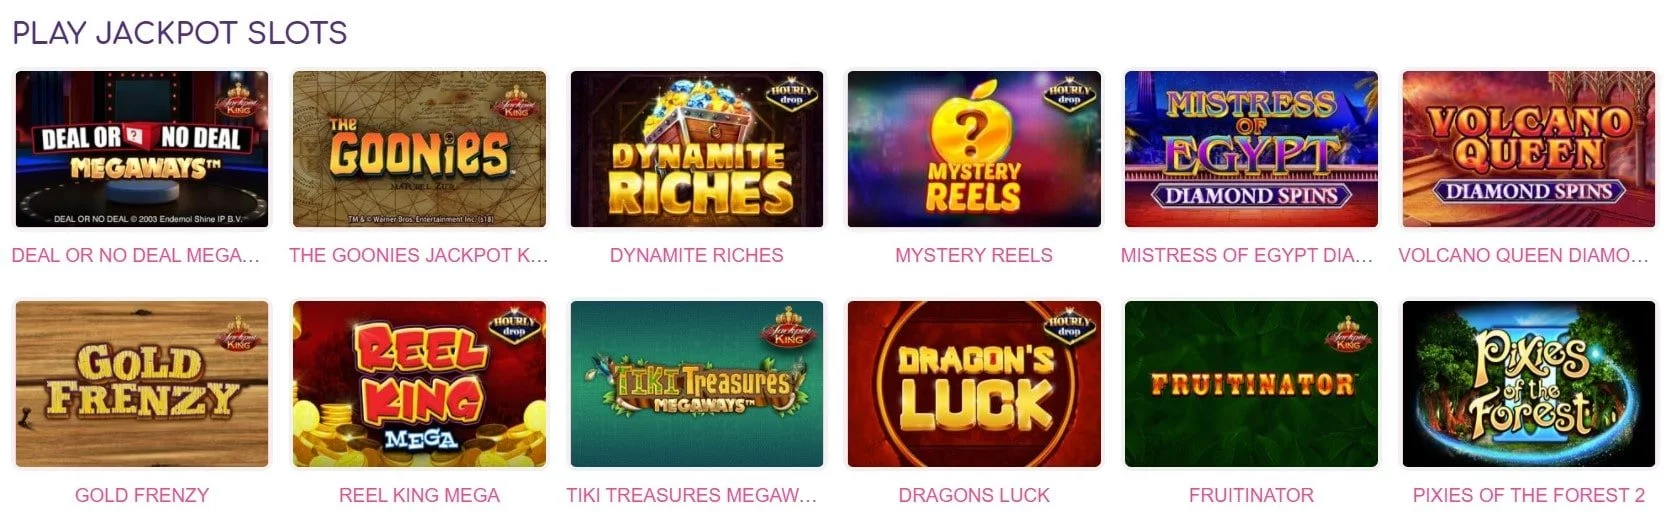 pink casino jackpot slots-min